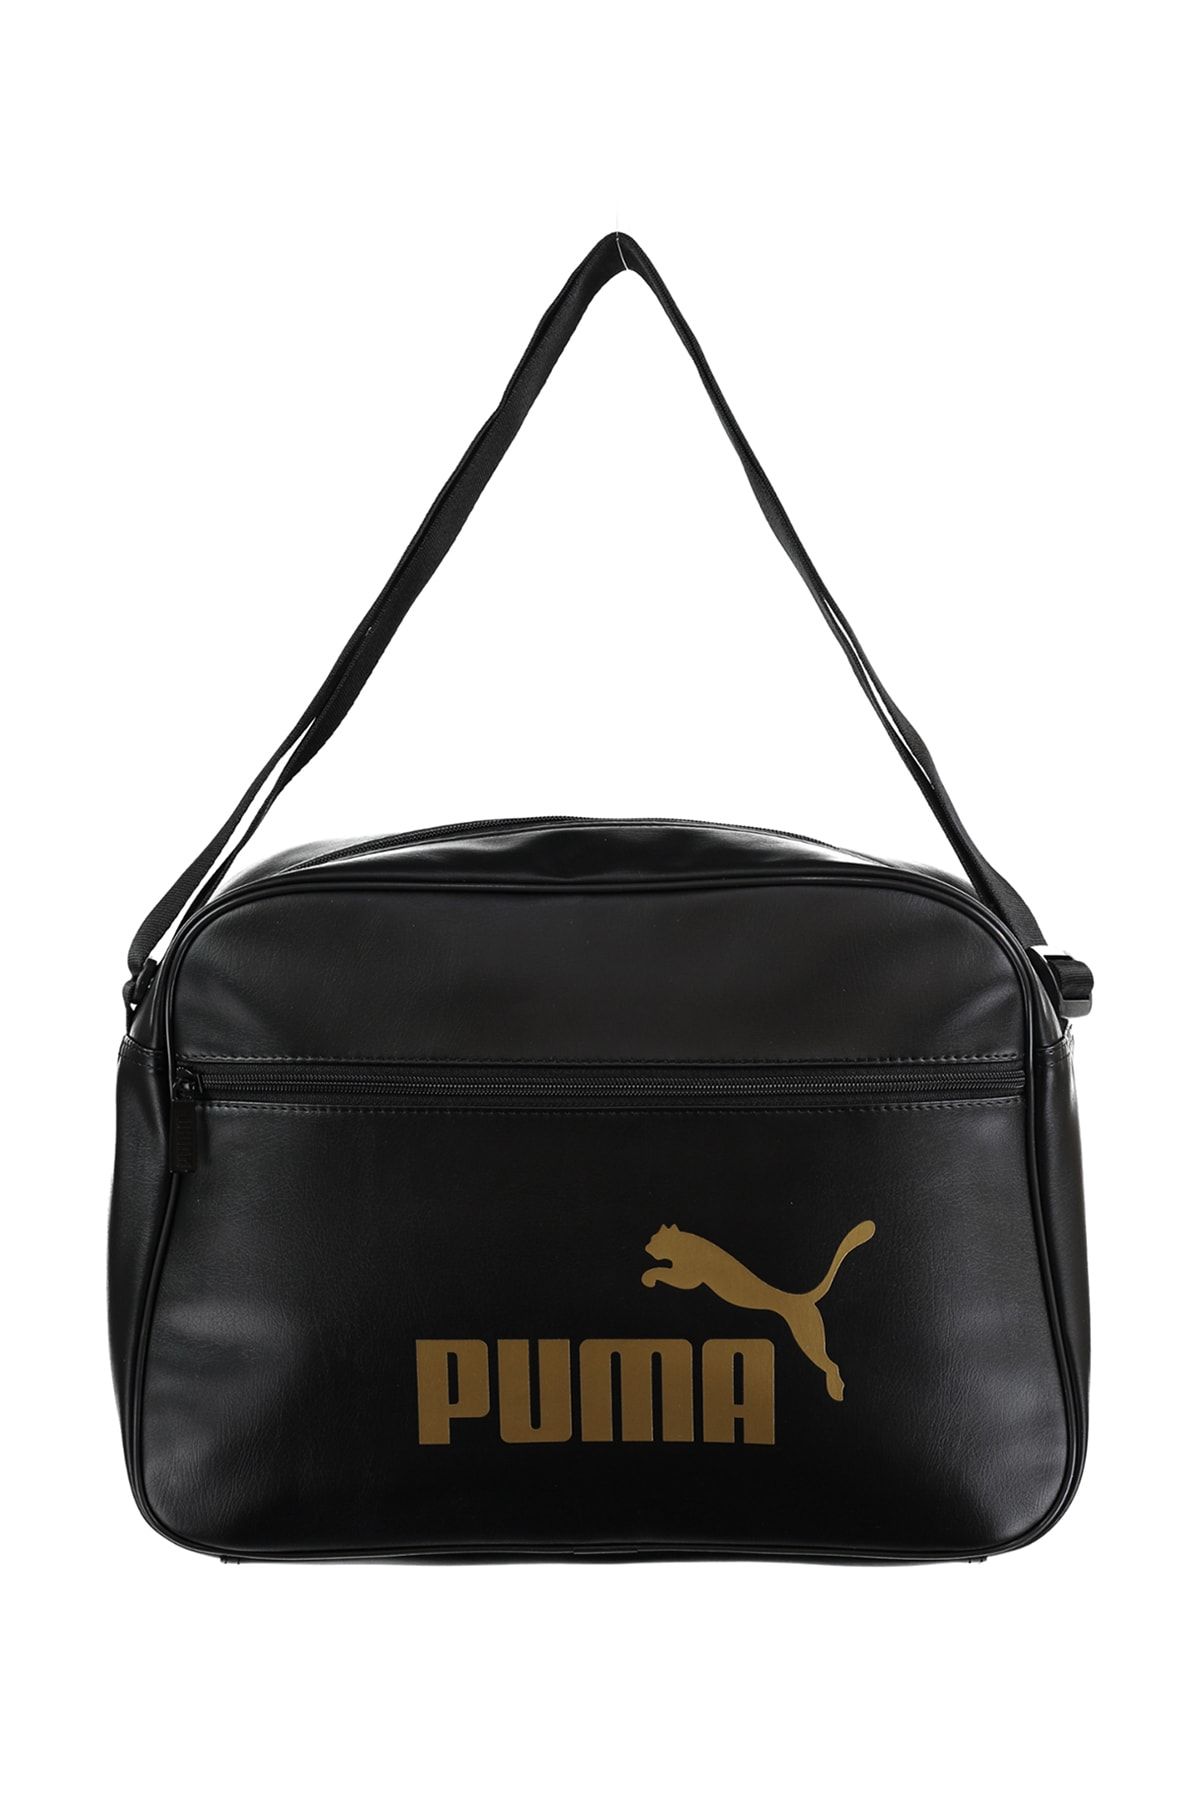 Puma Up Reporter Kadın Çanta